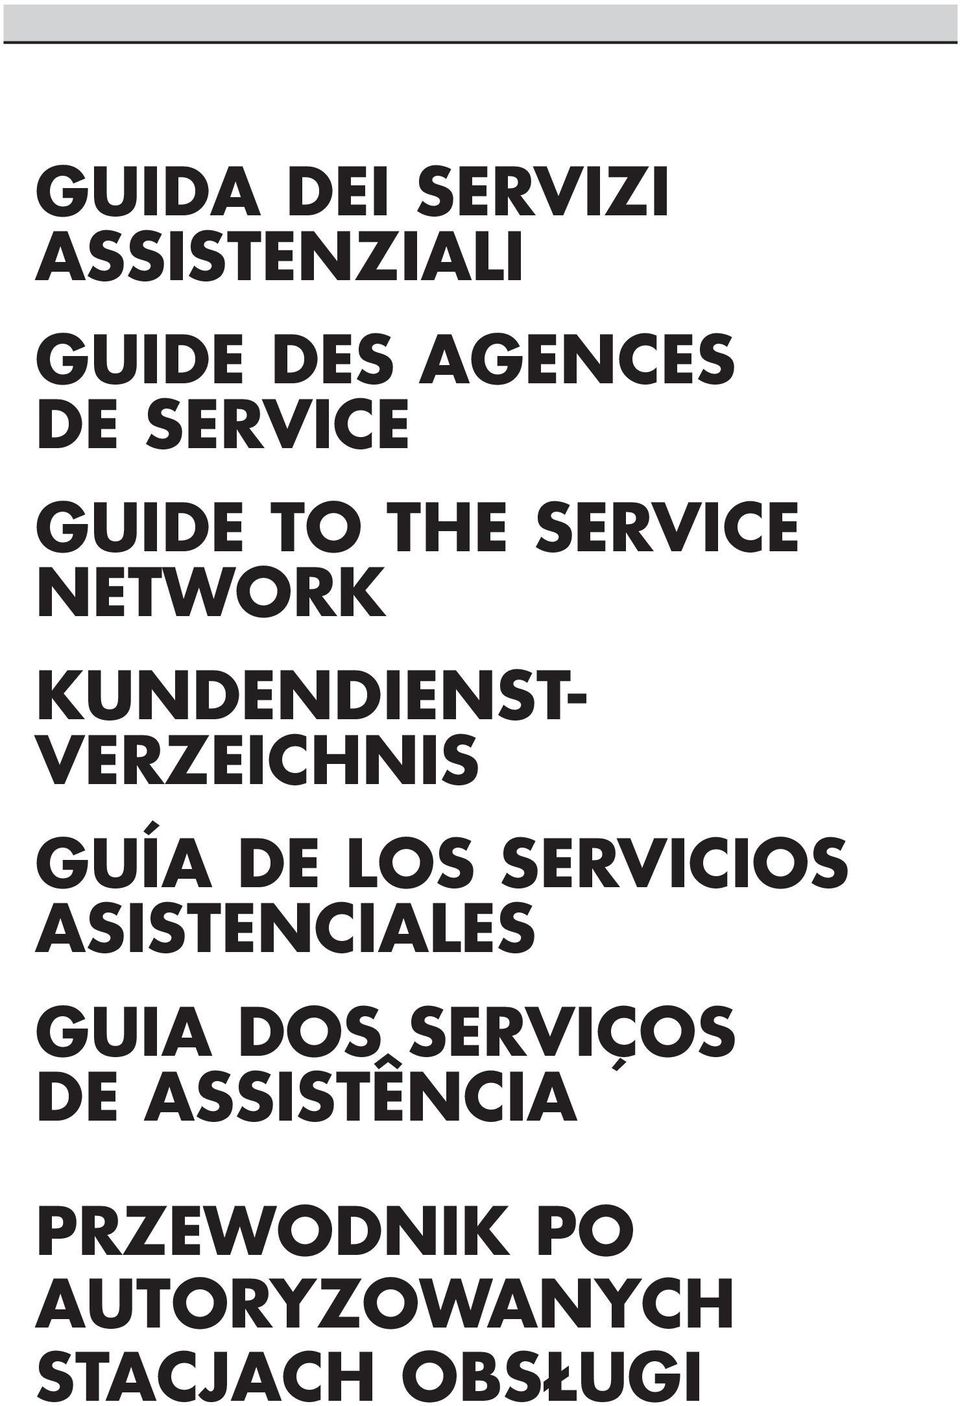 VERZEICHNIS GUÍA DE LOS SERVICIOS ASISTENCIALES GUIA DOS